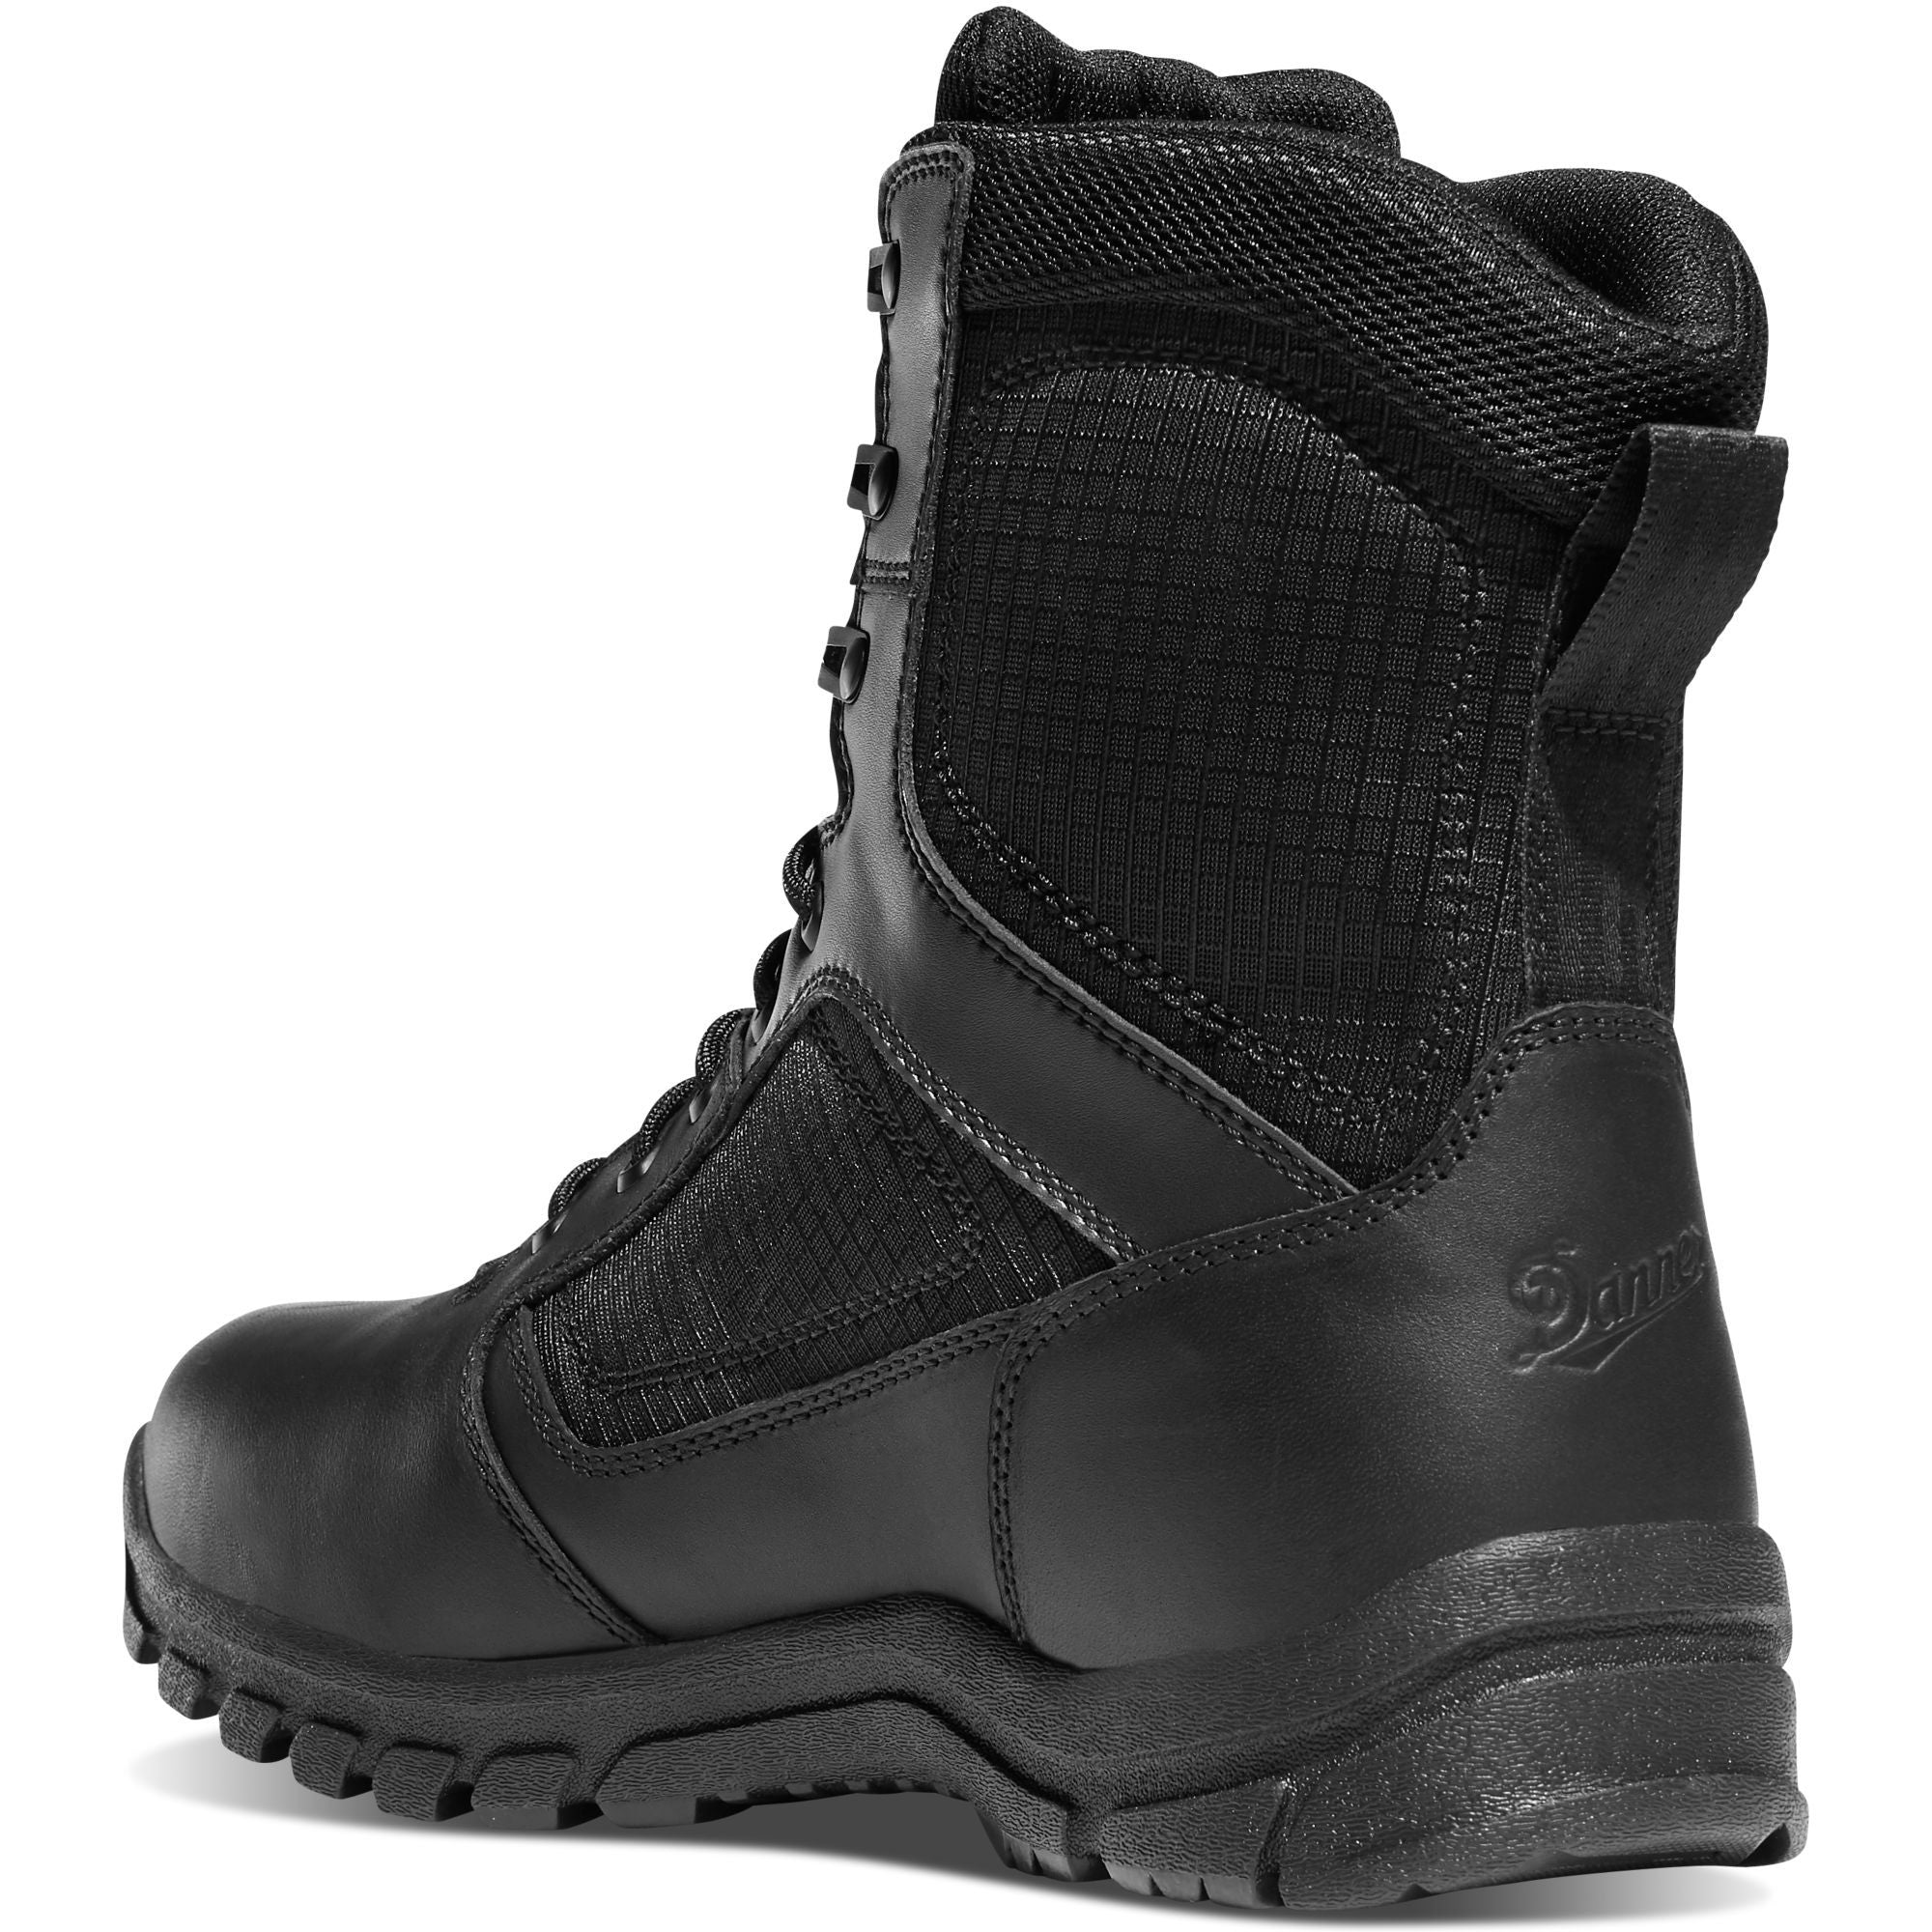 Danner Men's Lookout 8" Insulated Waterproof Duty Boot - Black - 23827  - Overlook Boots